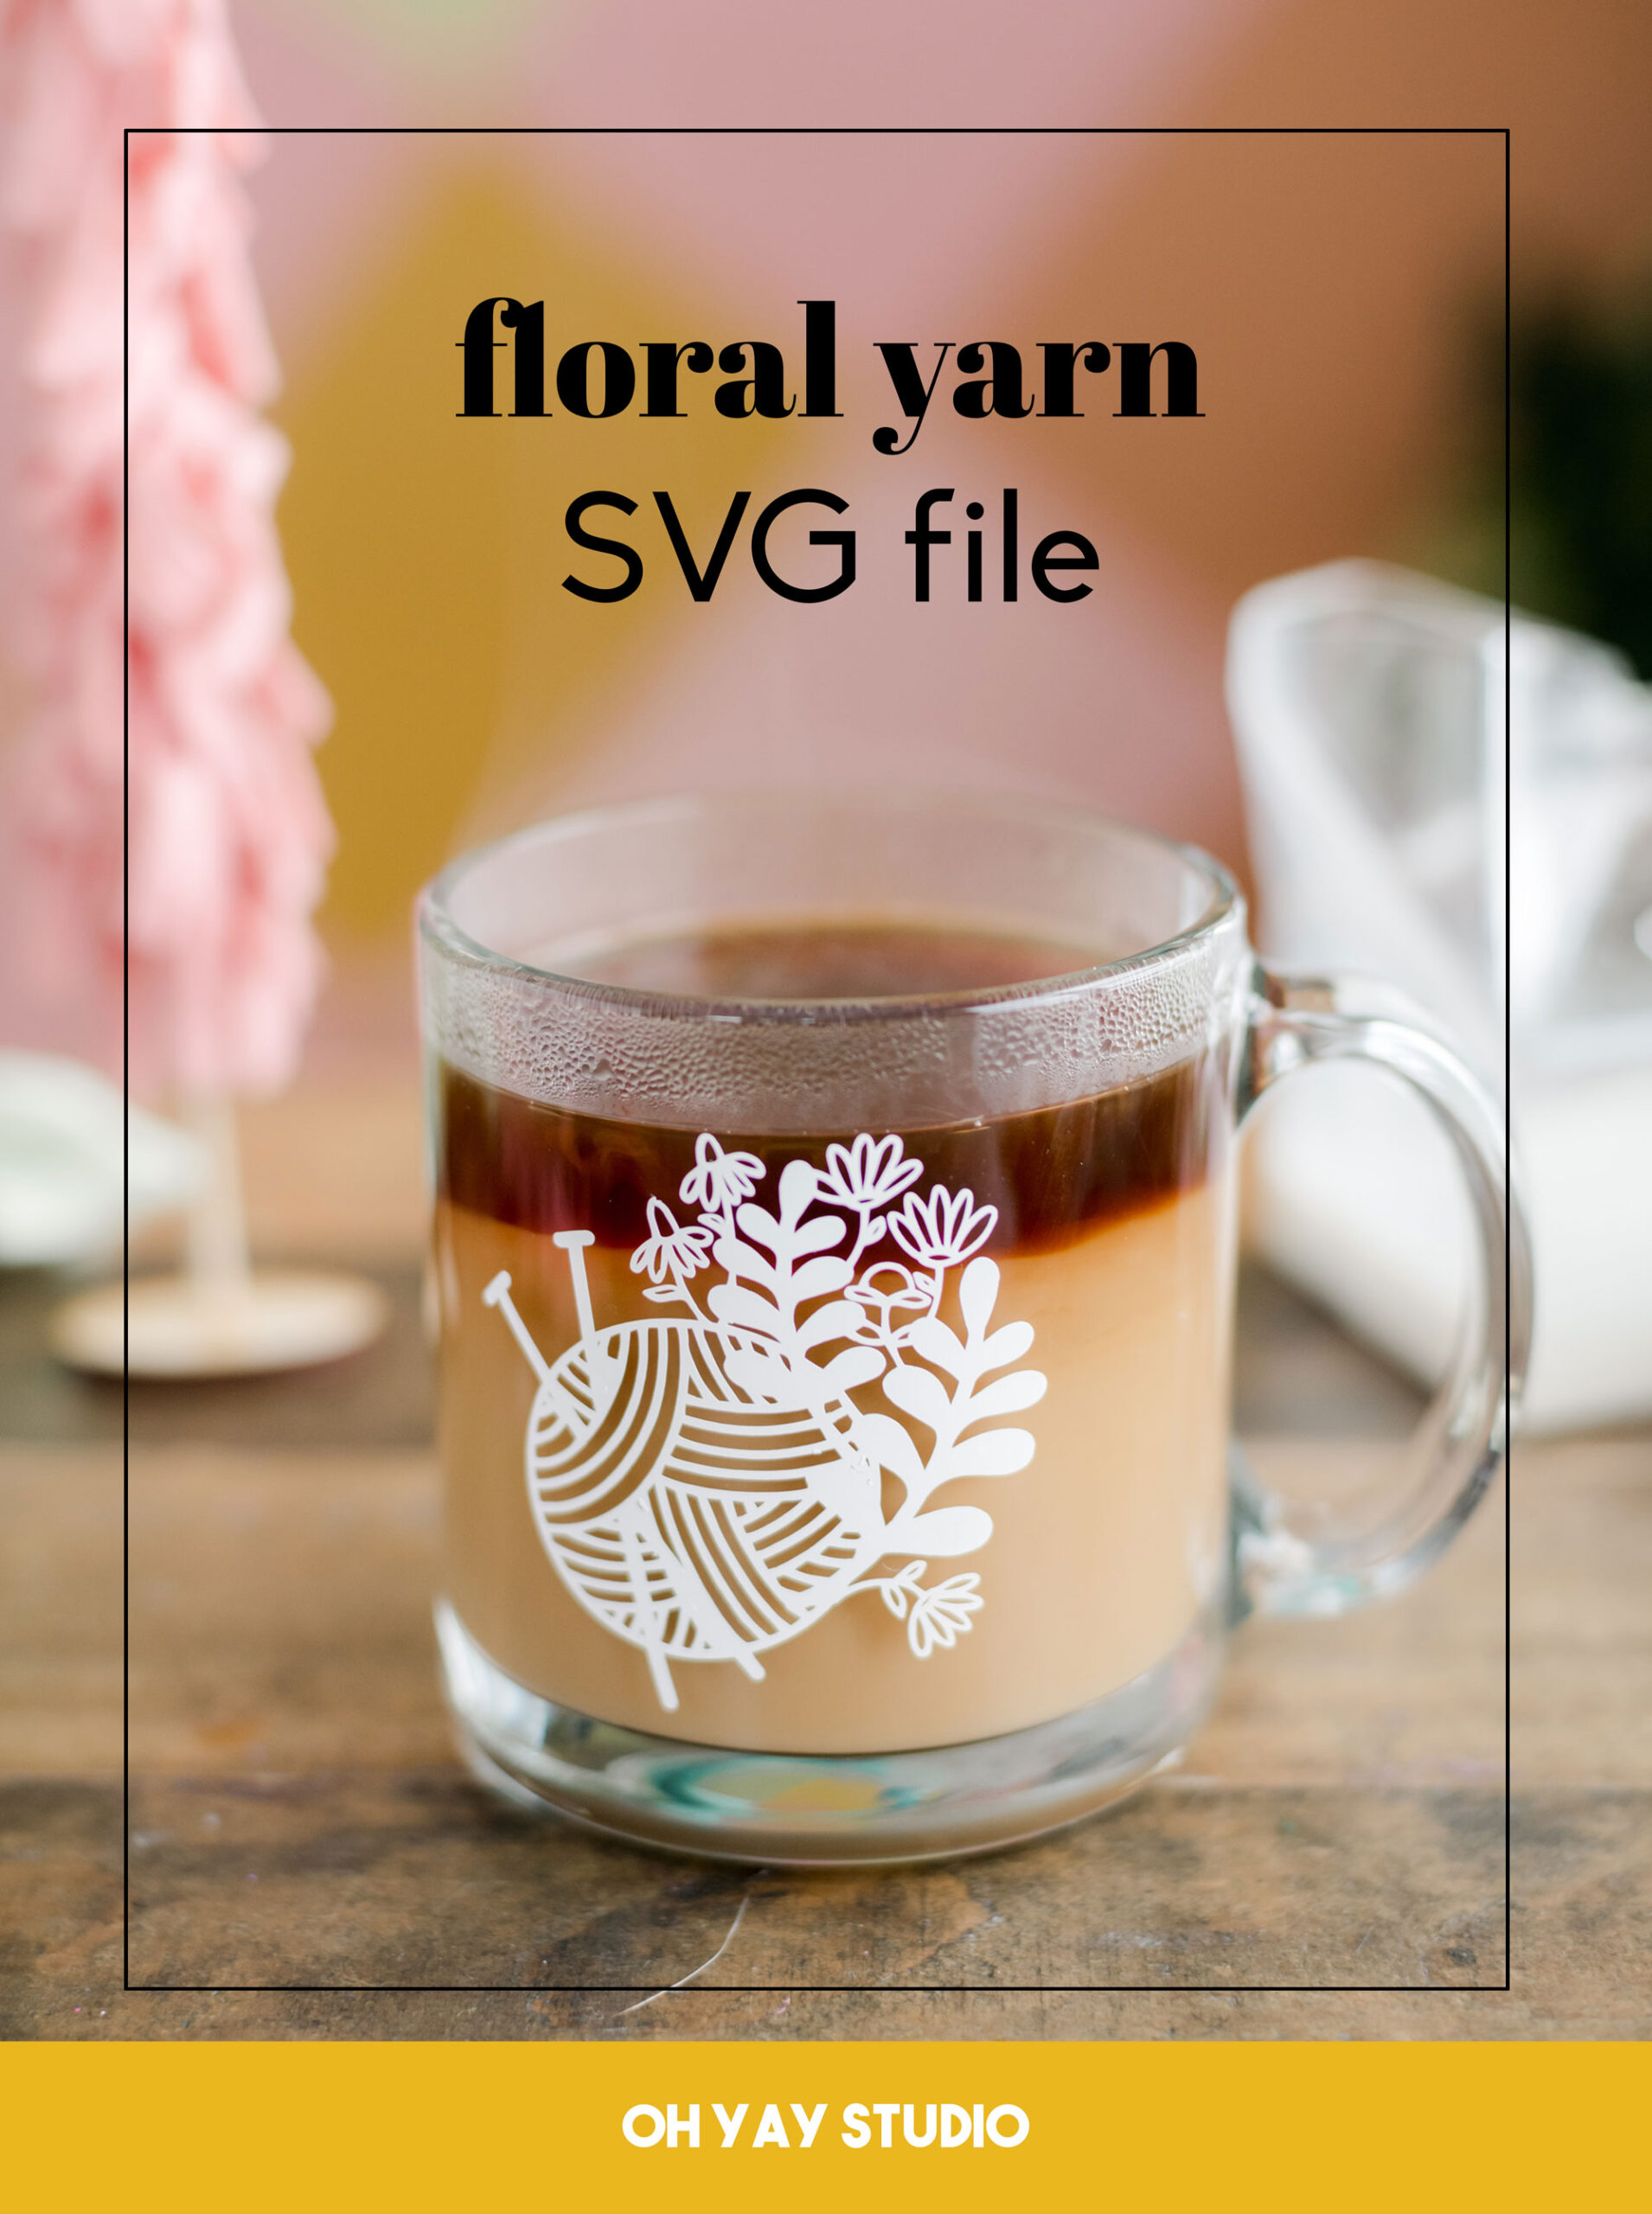 floral yarn SVG file, crafting SVG file, free craft SVG file, yarn ball SVG file, oh yay studio SVG file